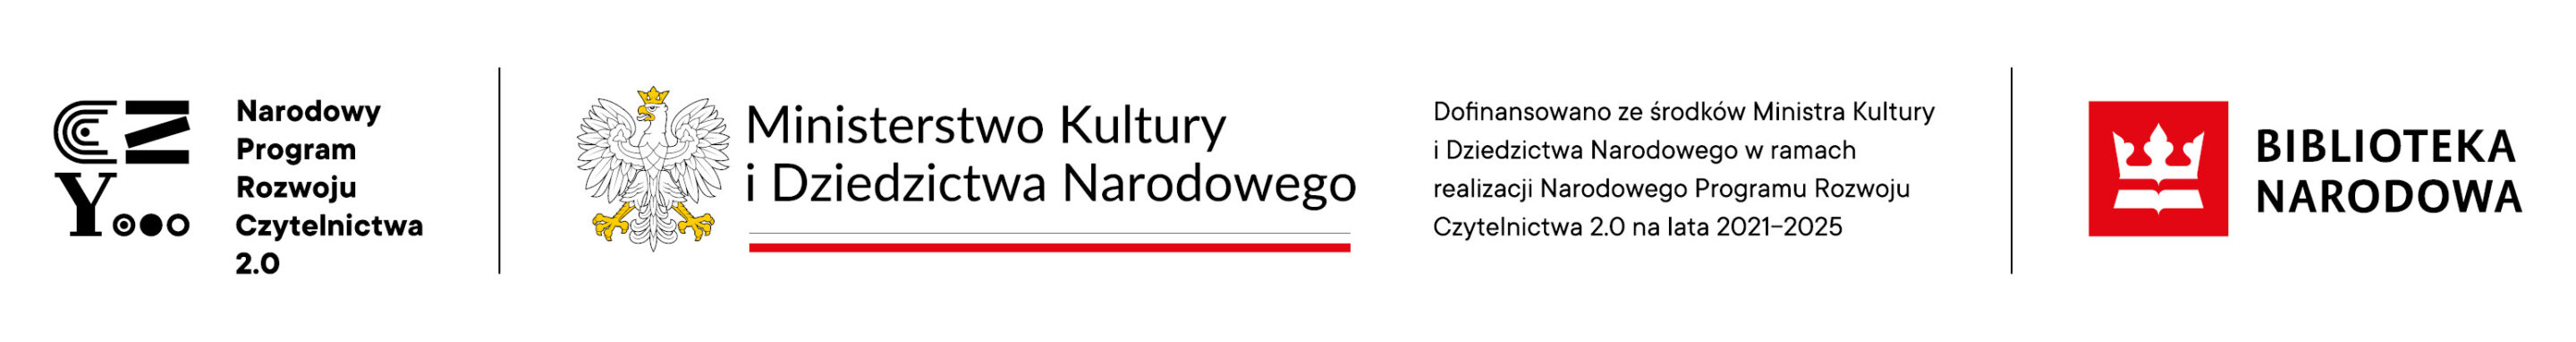 belka logotypy_Narodowy-Progr-Rozw-Czyt_MKiDN_Bibl-Nar